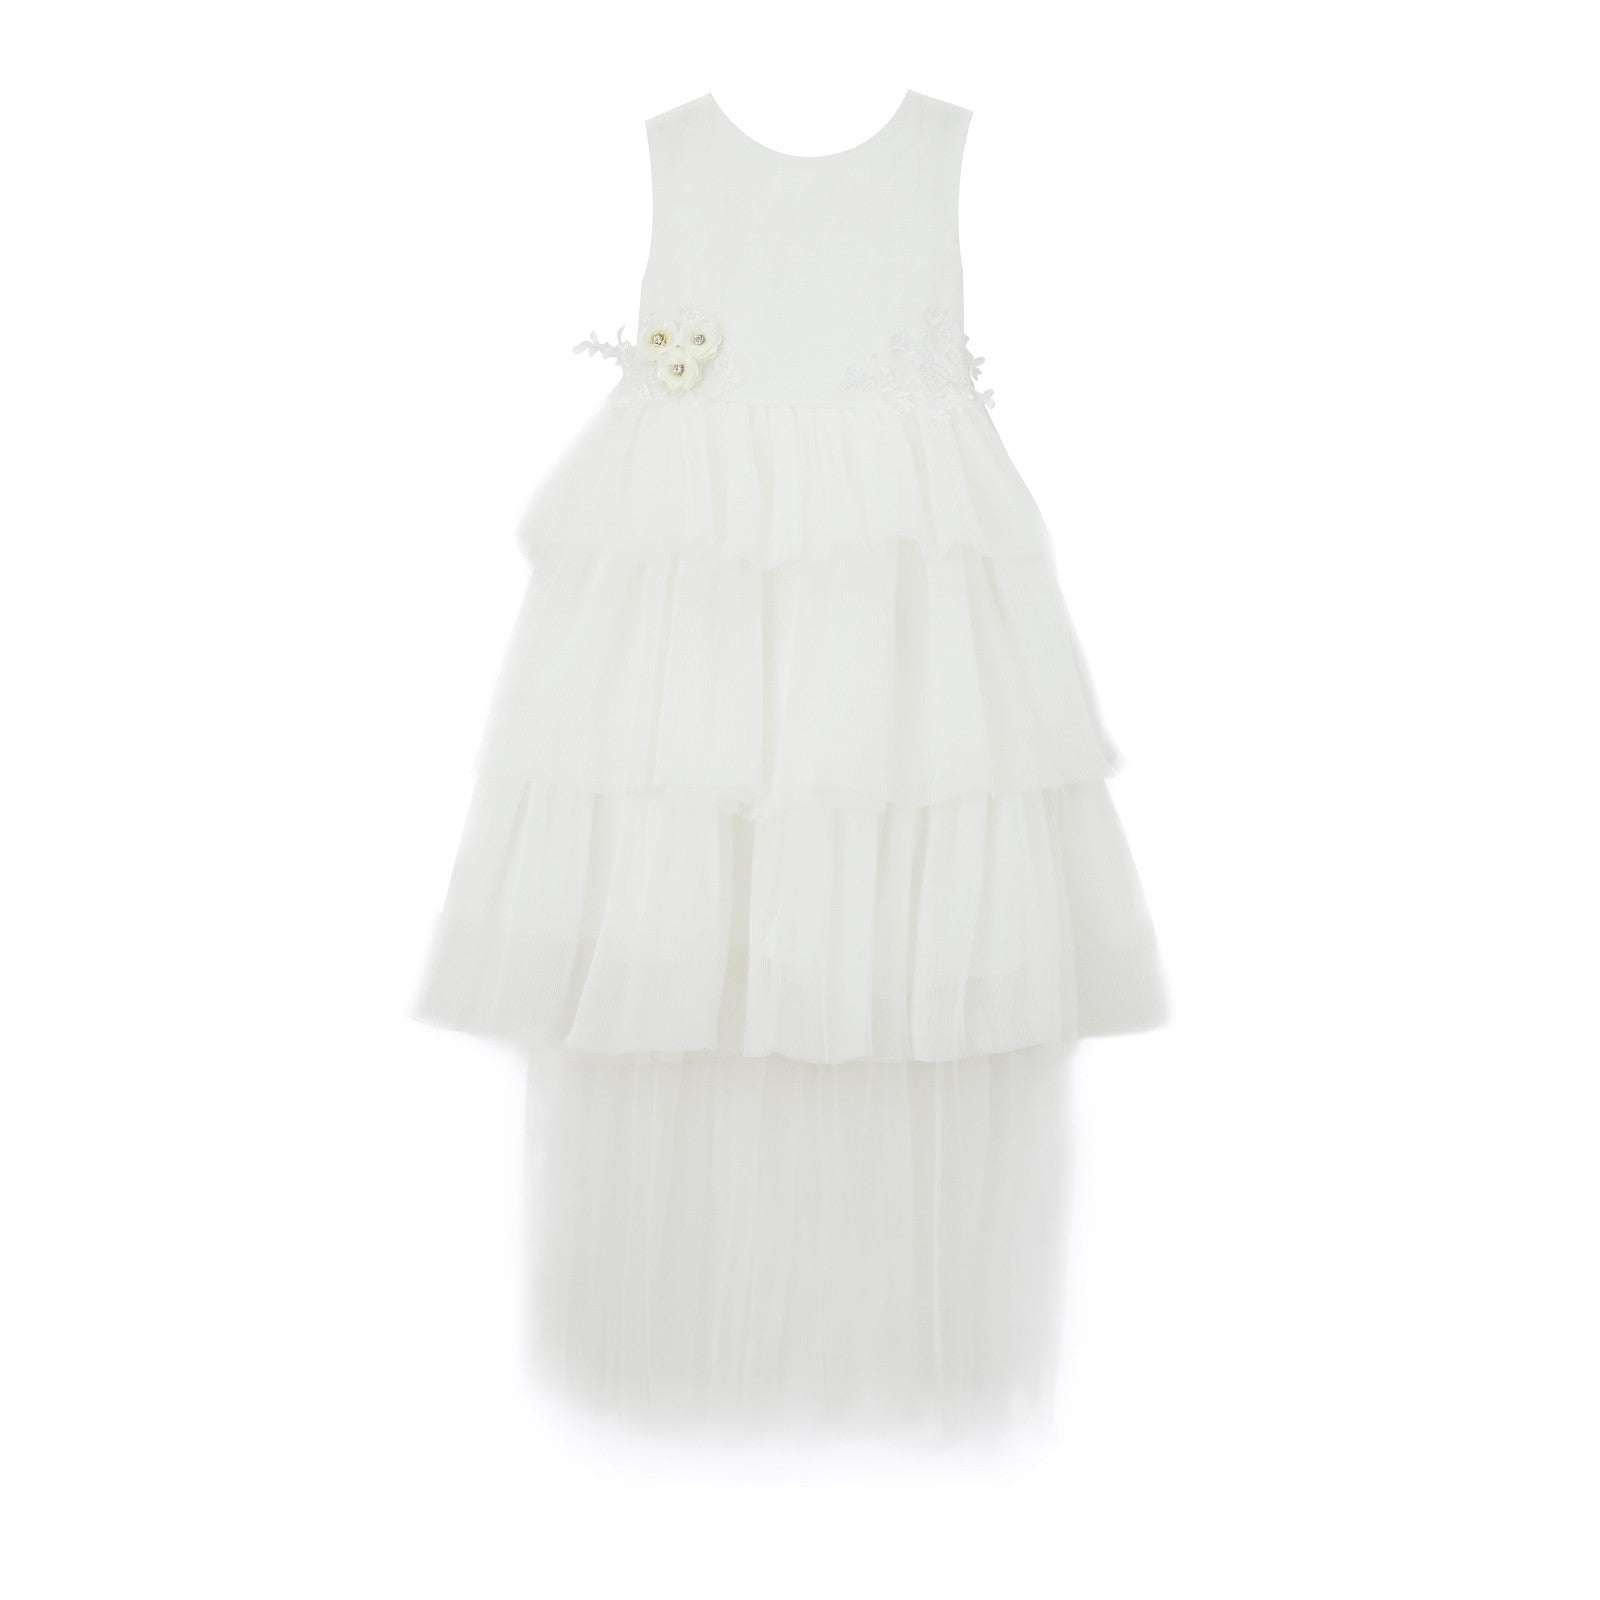 Estelle Dress in White